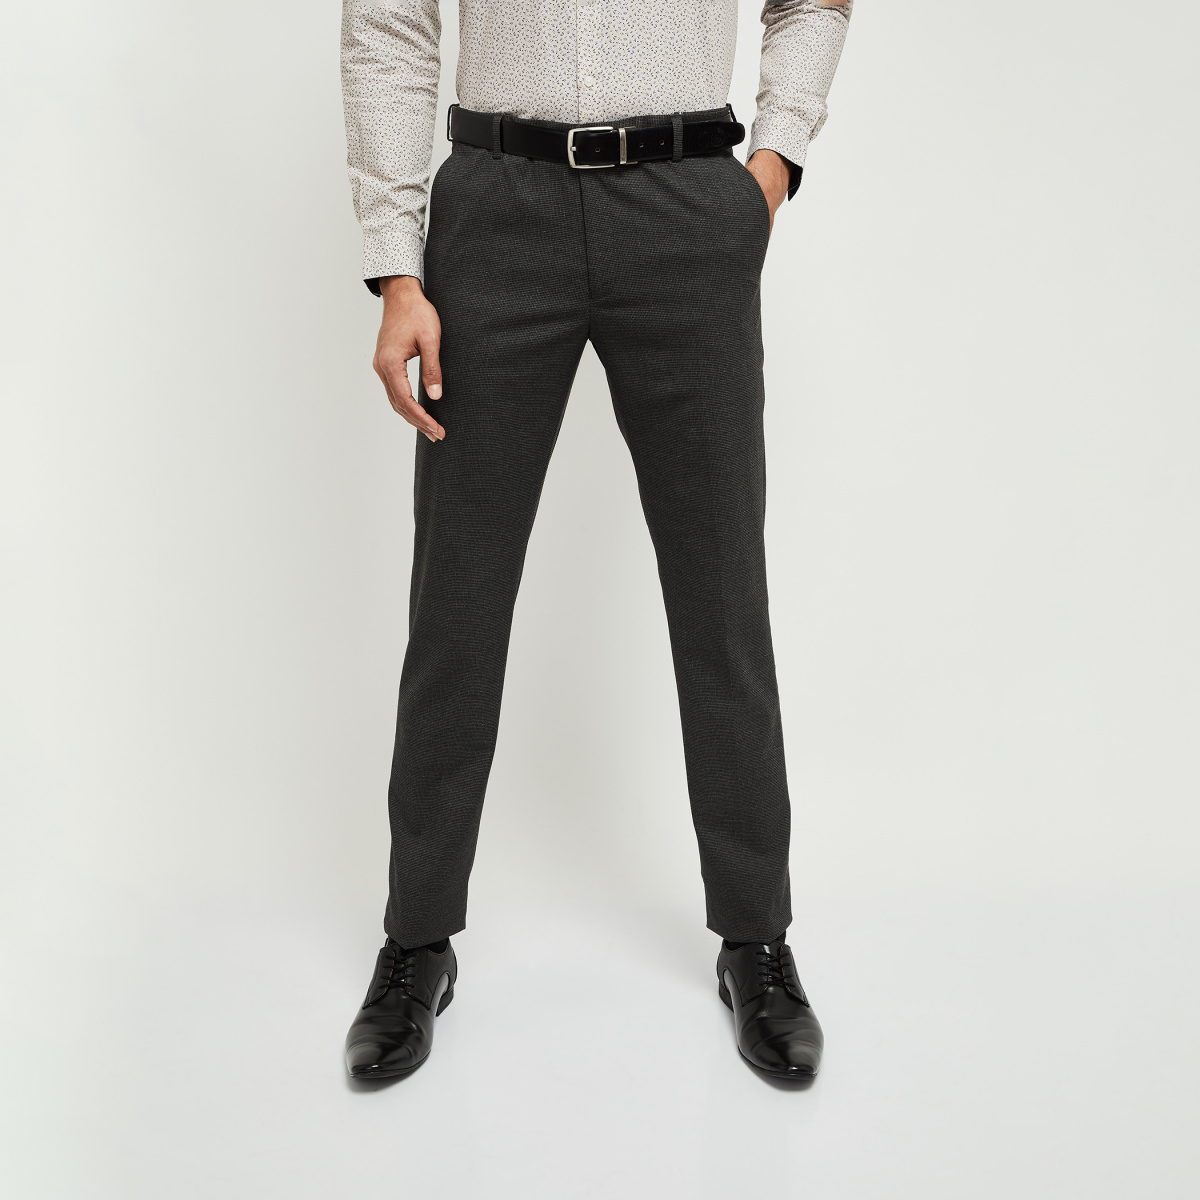 Buy Men Beige Solid Slim Fit Formal Trousers Online  776210  Peter England